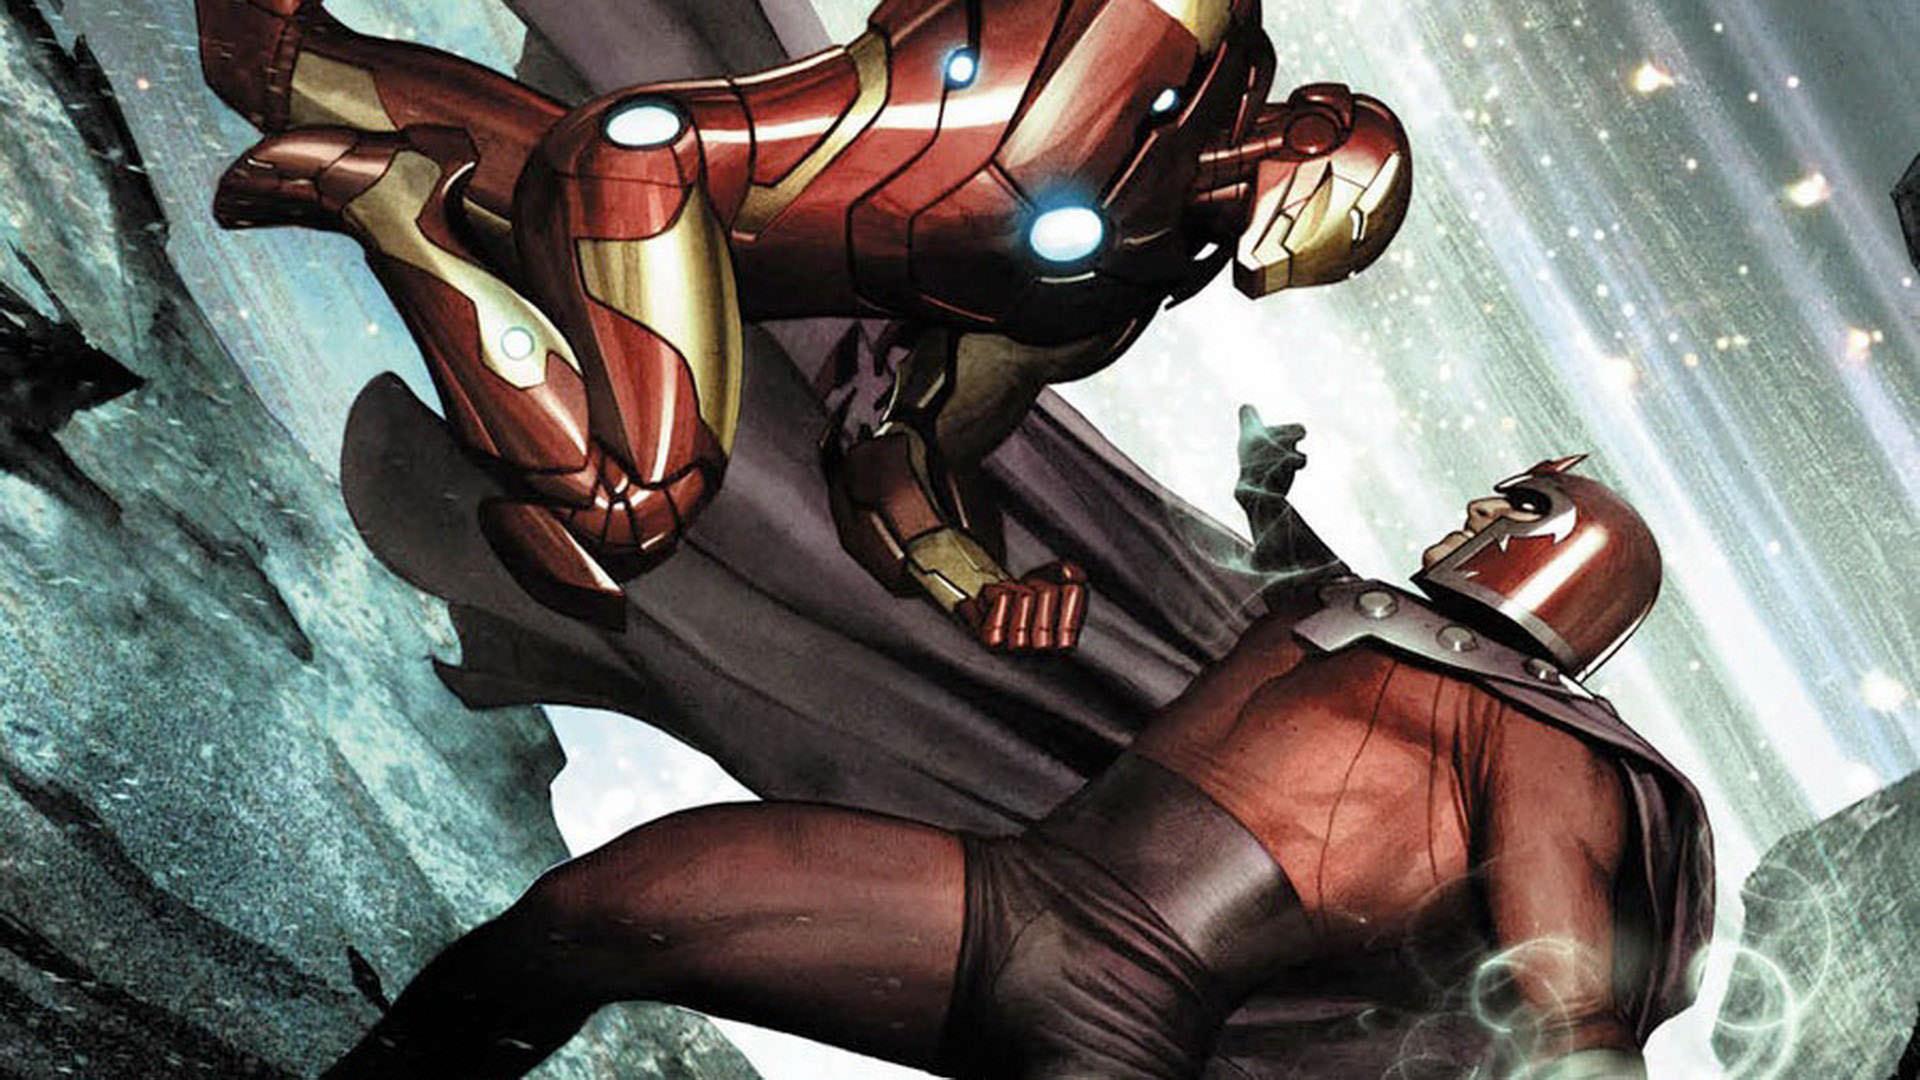 magneto - Iron man